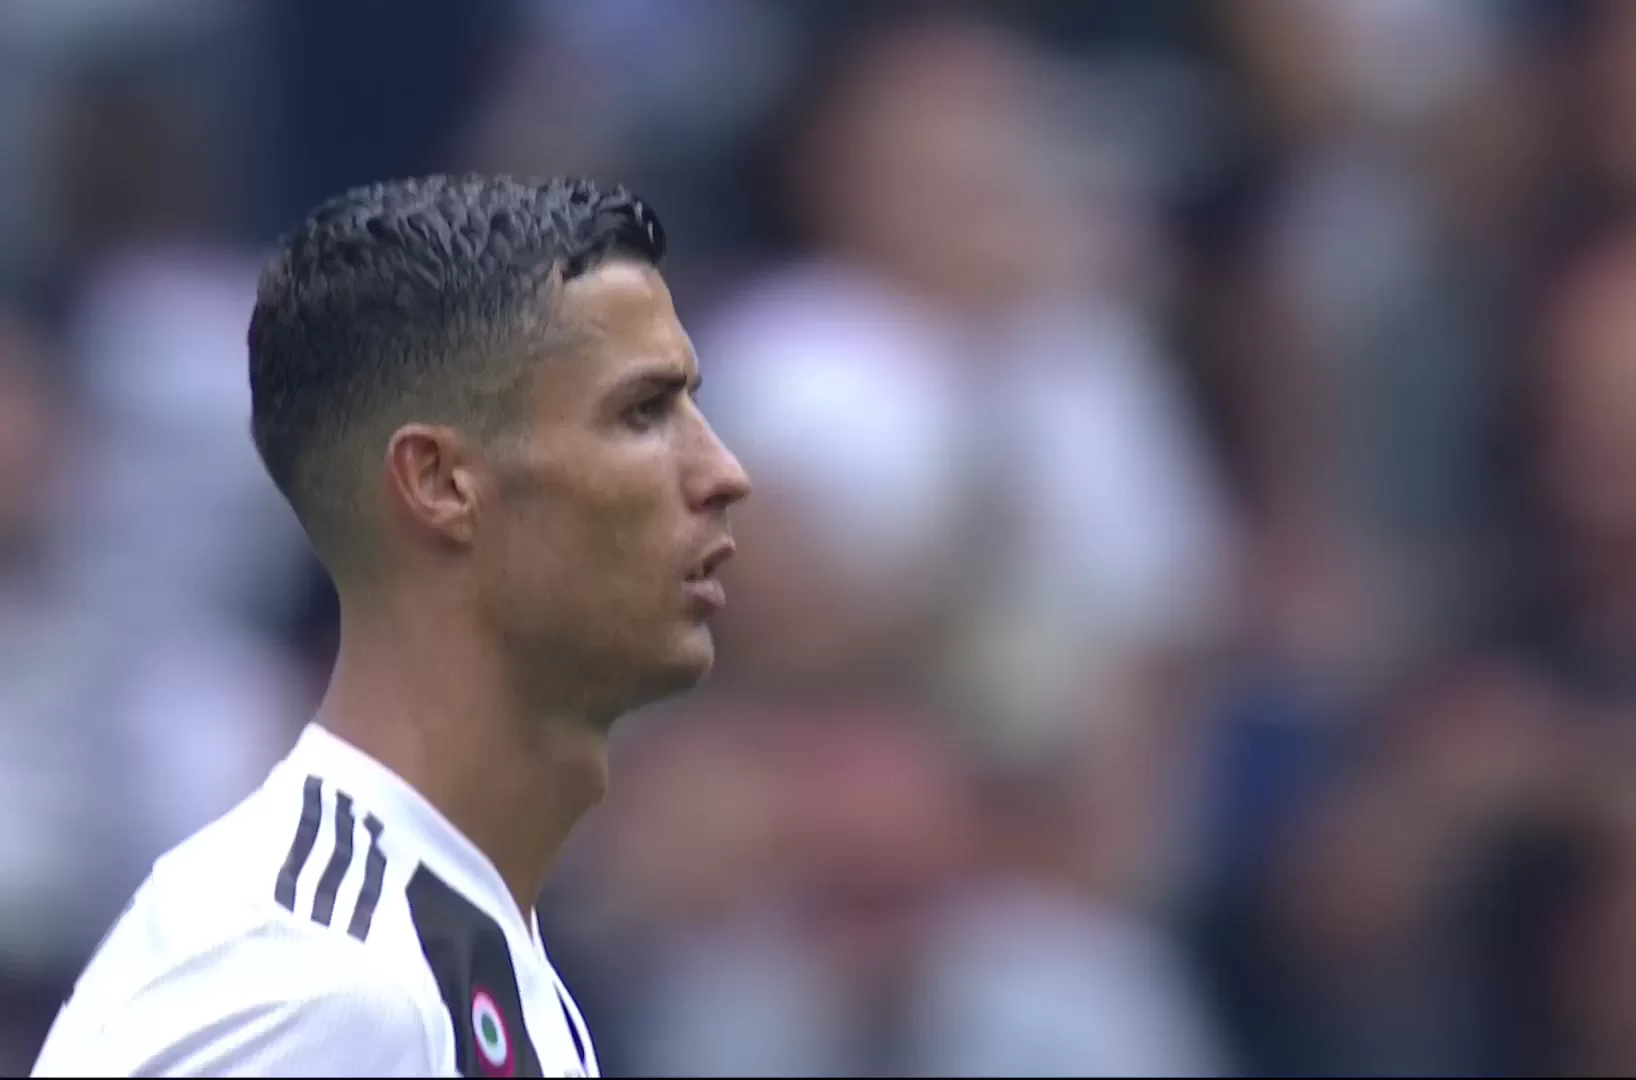 L’applauso, il volo in Grecia, l’ufficialità: Ronaldo ha riscritto la storia